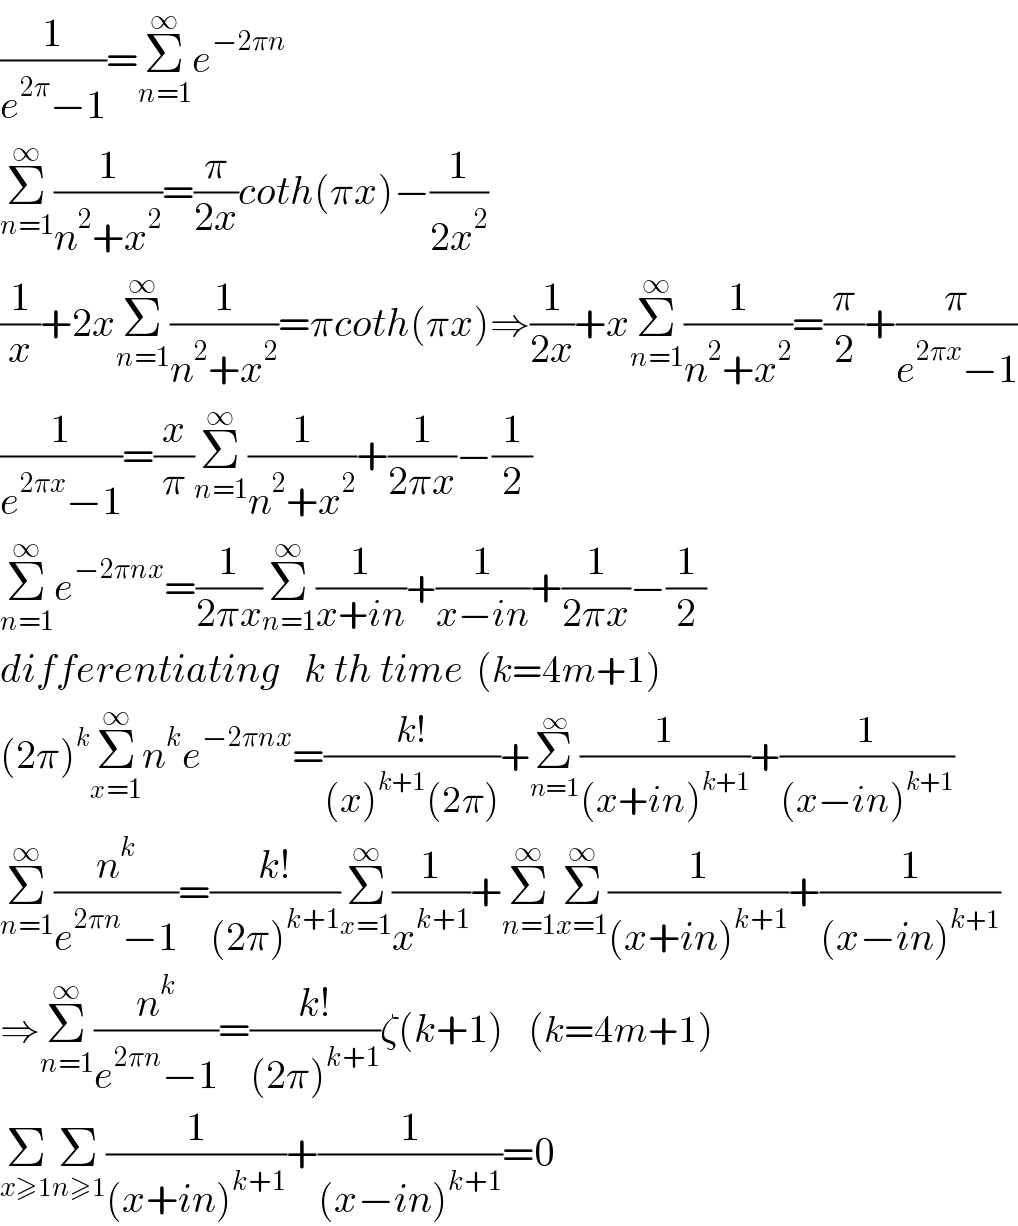 (1/(e^(2π) −1))=Σ_(n=1) ^∞ e^(−2πn  )               Σ_(n=1) ^∞ (1/(n^2 +x^2 ))=(π/(2x))coth(πx)−(1/(2x^2 ))  (1/x)+2xΣ_(n=1) ^∞ (1/(n^2 +x^2 ))=πcoth(πx)⇒(1/(2x))+xΣ_(n=1) ^∞ (1/(n^2 +x^2 ))=(π/2)+(π/(e^(2πx) −1))  (1/(e^(2πx) −1))=(x/π)Σ_(n=1) ^∞ (1/(n^2 +x^2 ))+(1/(2πx))−(1/2)  Σ_(n=1) ^∞ e^(−2πnx) =(1/(2πx))Σ_(n=1) ^∞ (1/(x+in))+(1/(x−in))+(1/(2πx))−(1/2)  differentiating   k th time  (k=4m+1)  (2π)^k Σ_(x=1) ^∞ n^k e^(−2πnx) =((k!)/((x)^(k+1) (2π)))+Σ_(n=1) ^∞ (1/((x+in)^(k+1) ))+(1/((x−in)^(k+1) ))  Σ_(n=1) ^∞ (n^k /(e^(2πn) −1))=((k!)/((2π)^(k+1) ))Σ_(x=1) ^∞ (1/x^(k+1) )+Σ_(n=1) ^∞ Σ_(x=1) ^∞ (1/((x+in)^(k+1) ))+(1/((x−in)^(k+1) ))  ⇒Σ_(n=1) ^∞ (n^k /(e^(2πn) −1))=((k!)/((2π)^(k+1) ))ζ(k+1)    (k=4m+1)  Σ_(x≥1) Σ_(n≥1) (1/((x+in)^(k+1) ))+(1/((x−in)^(k+1) ))=0  